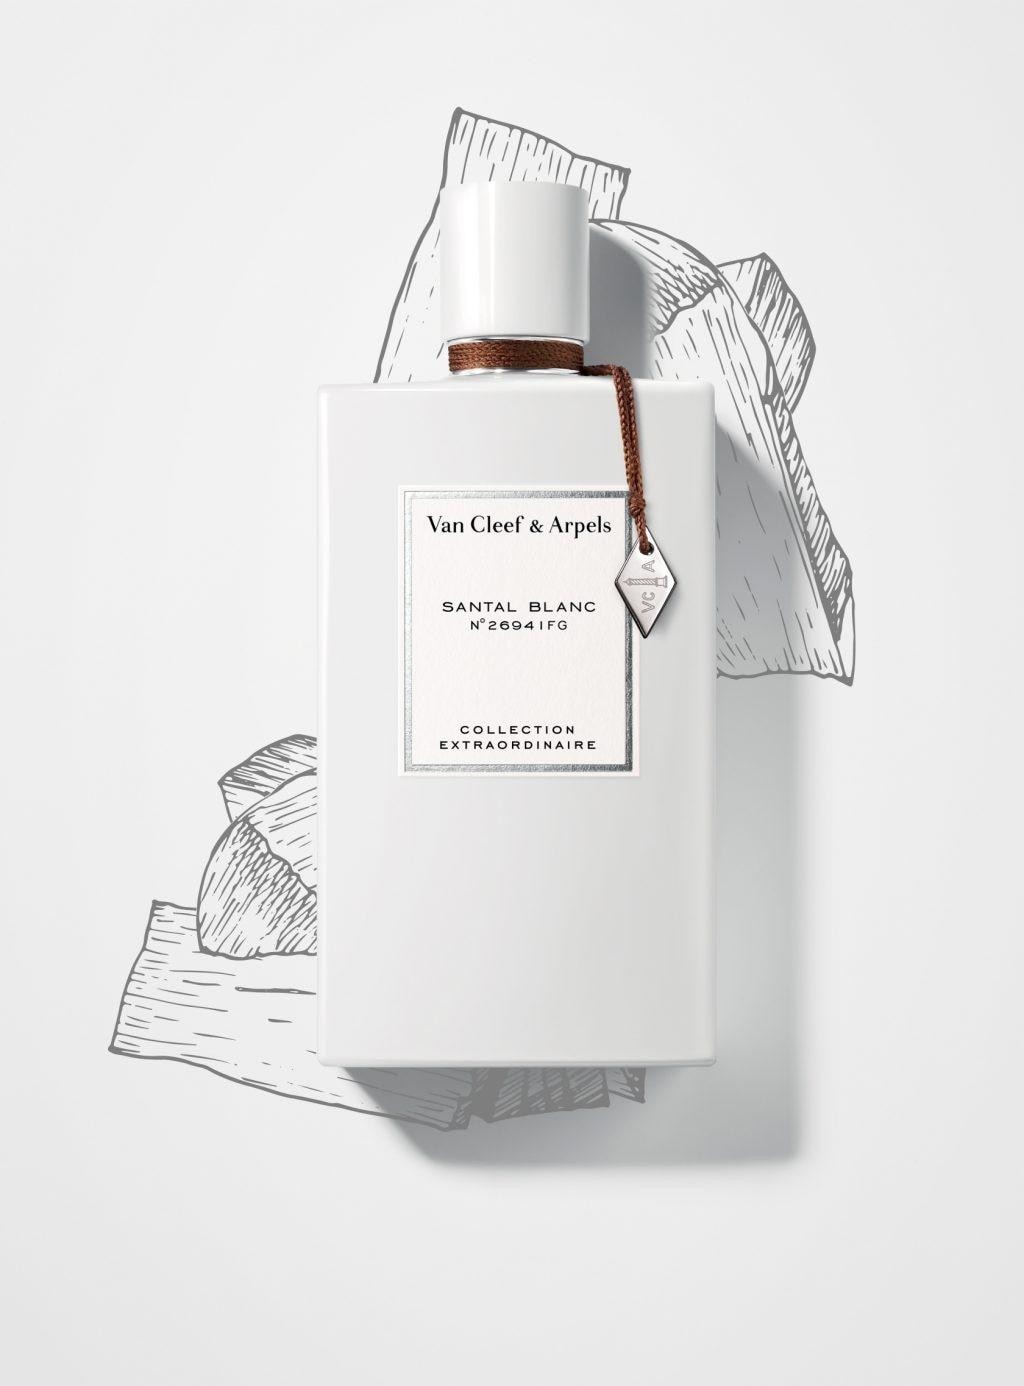 Van Cleef & Arpels Santal Blanc eau de parfum 75ml